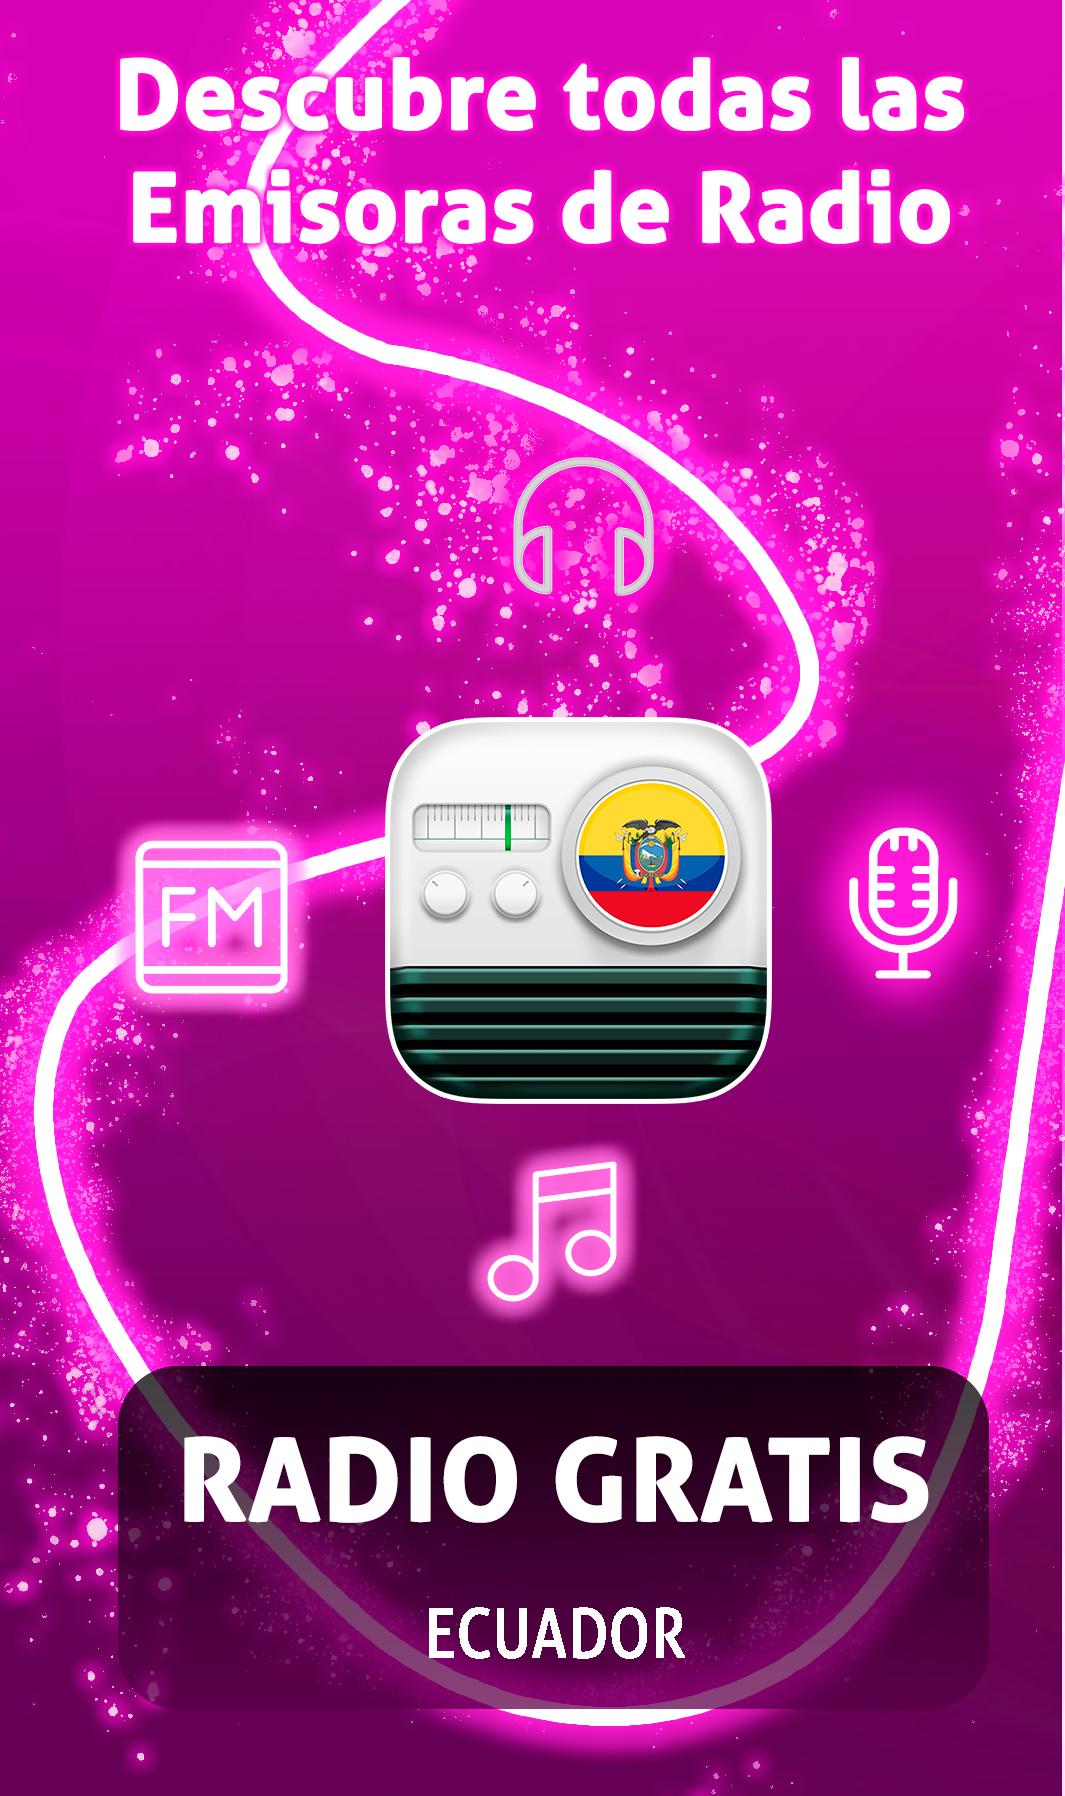 Radios del Ecuador - Escuchar Radio Por Internet for Android - APK Download